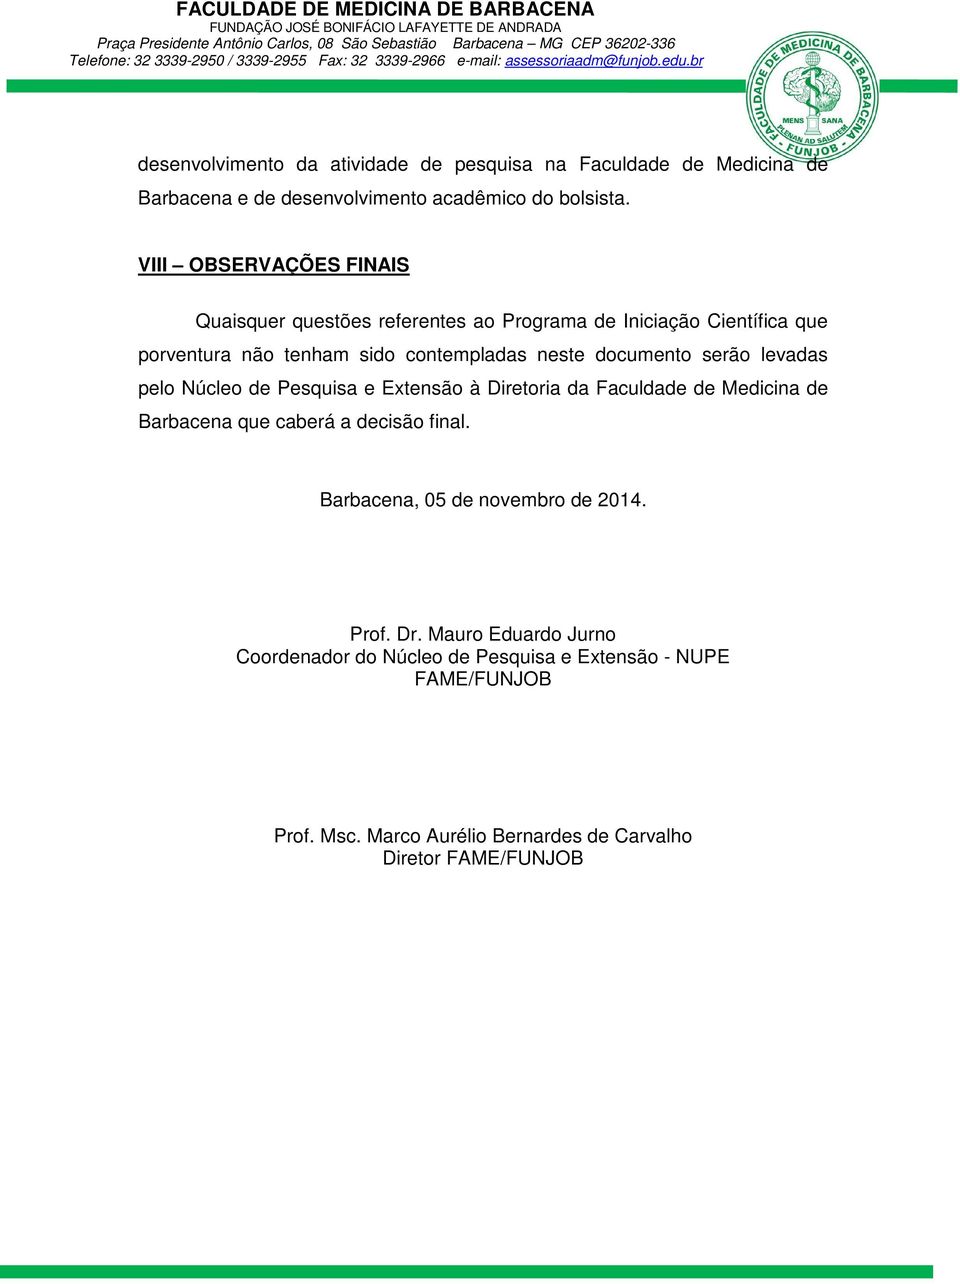 documento serão levadas pelo Núcleo de Pesquisa e Extensão à Diretoria da Faculdade de Medicina de Barbacena que caberá a decisão final.